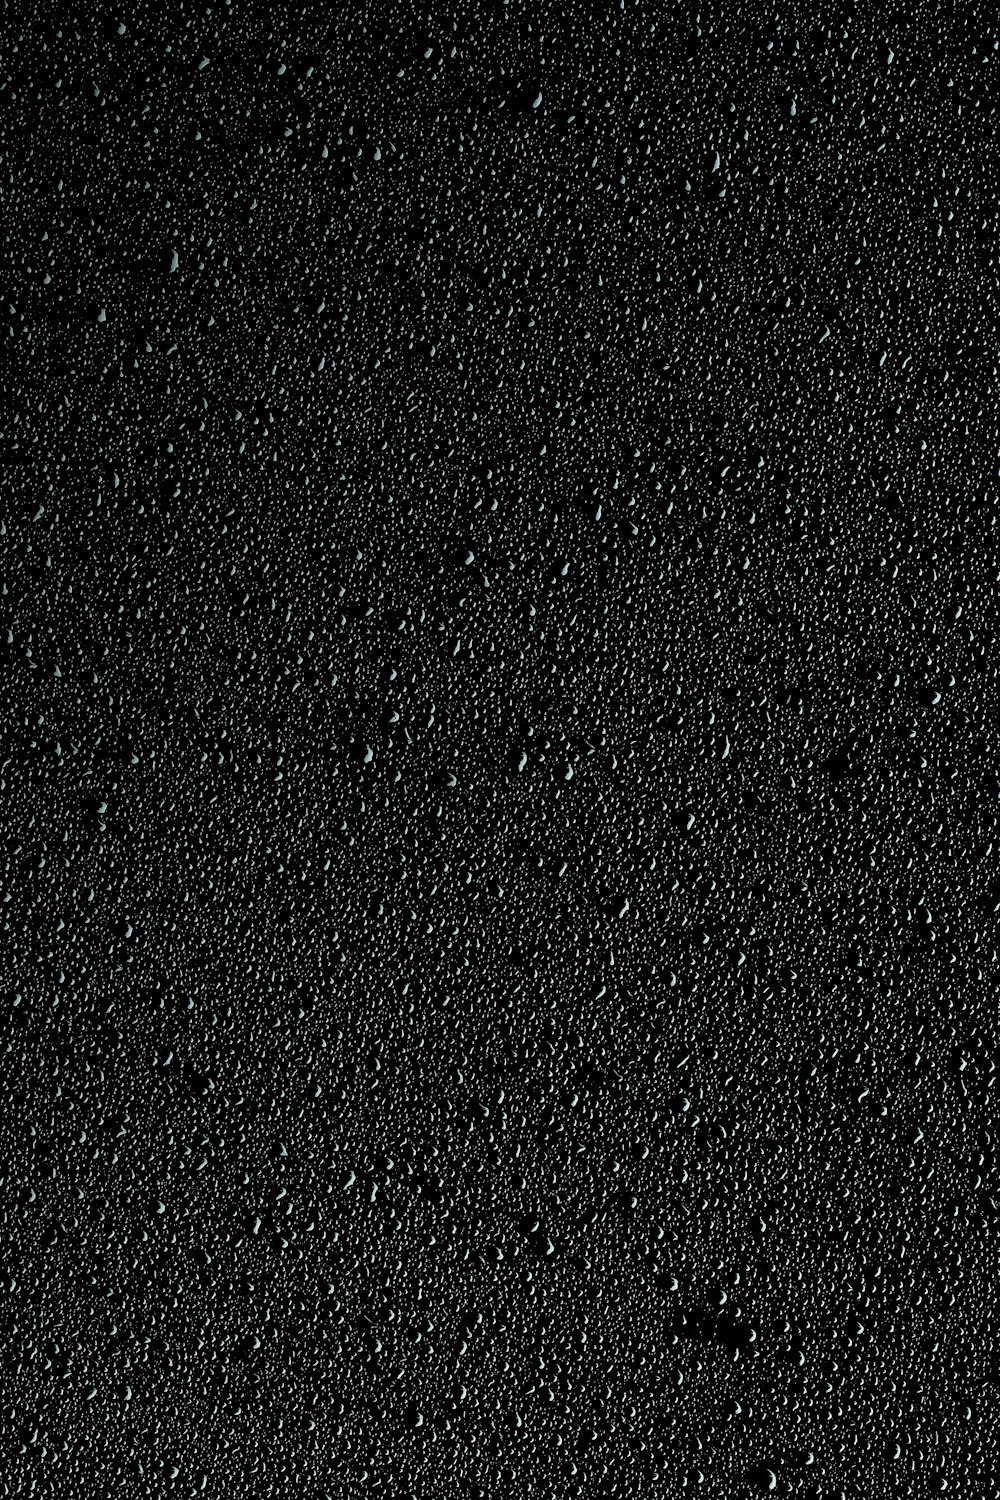 uno sfondo nero con piccole bolle d'acqua